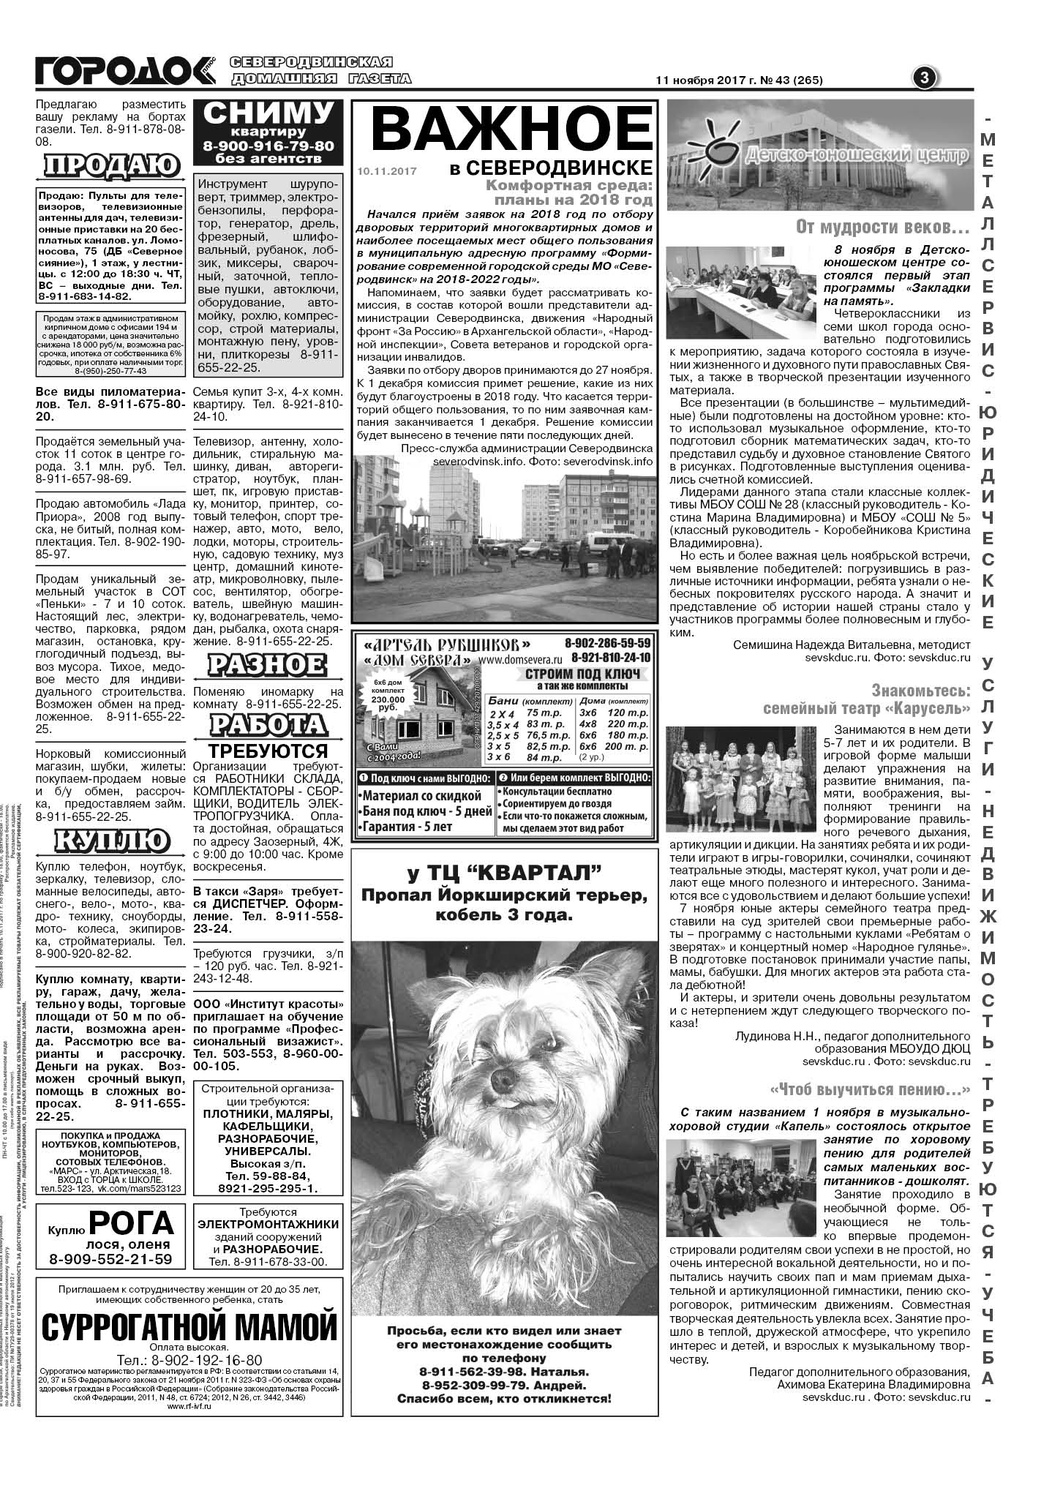 Городок плюс, выпуск номер 43 от 11 ноября 2017 года, страница 3.